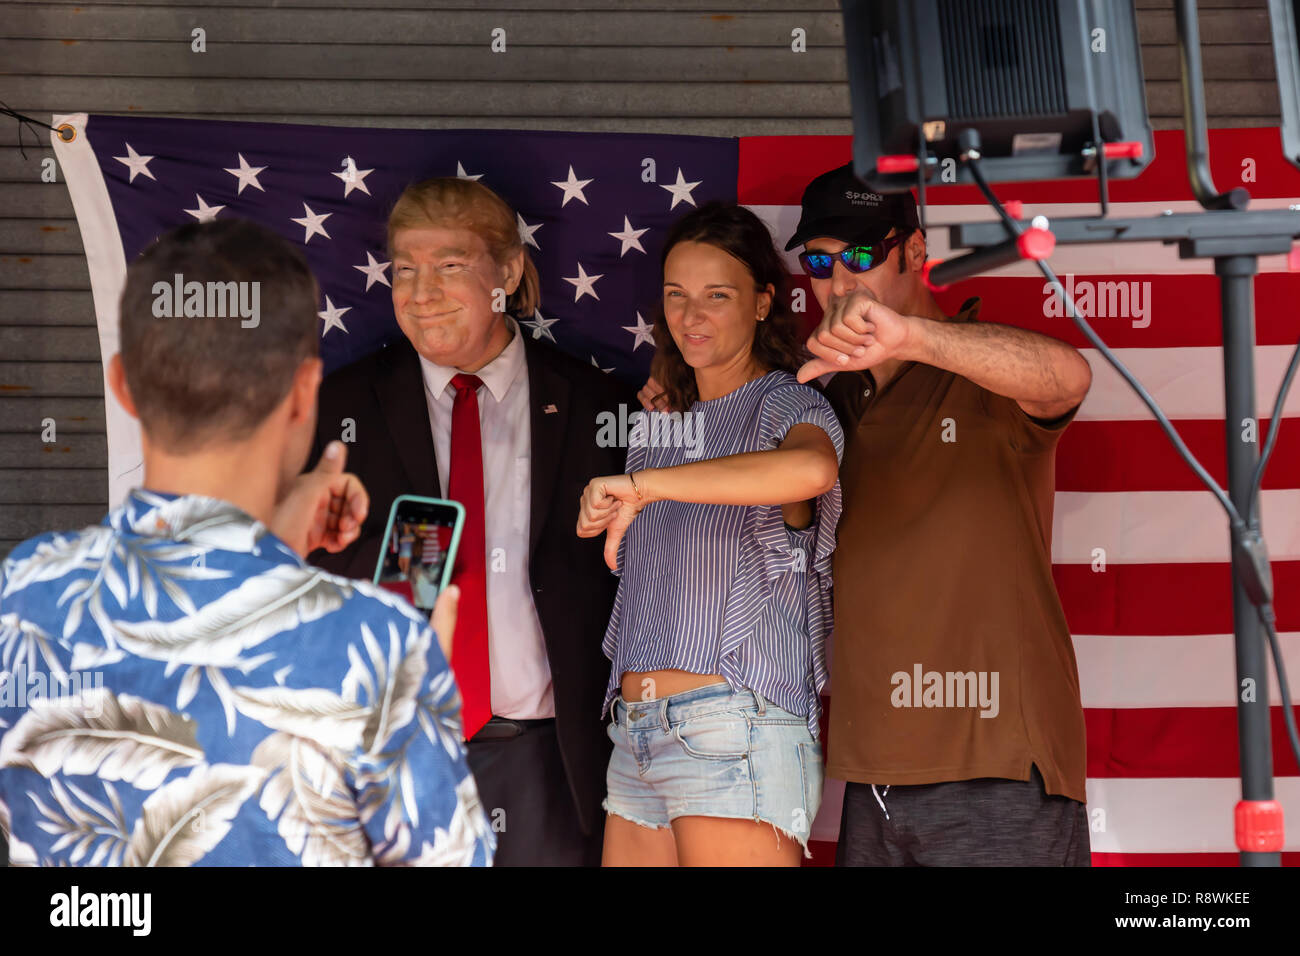 Key West, Florida, Stati Uniti - 2 Novembre 2018: persone che posano con Donald Trump Impersonator e mostrando il pollice verso il basso. Foto Stock